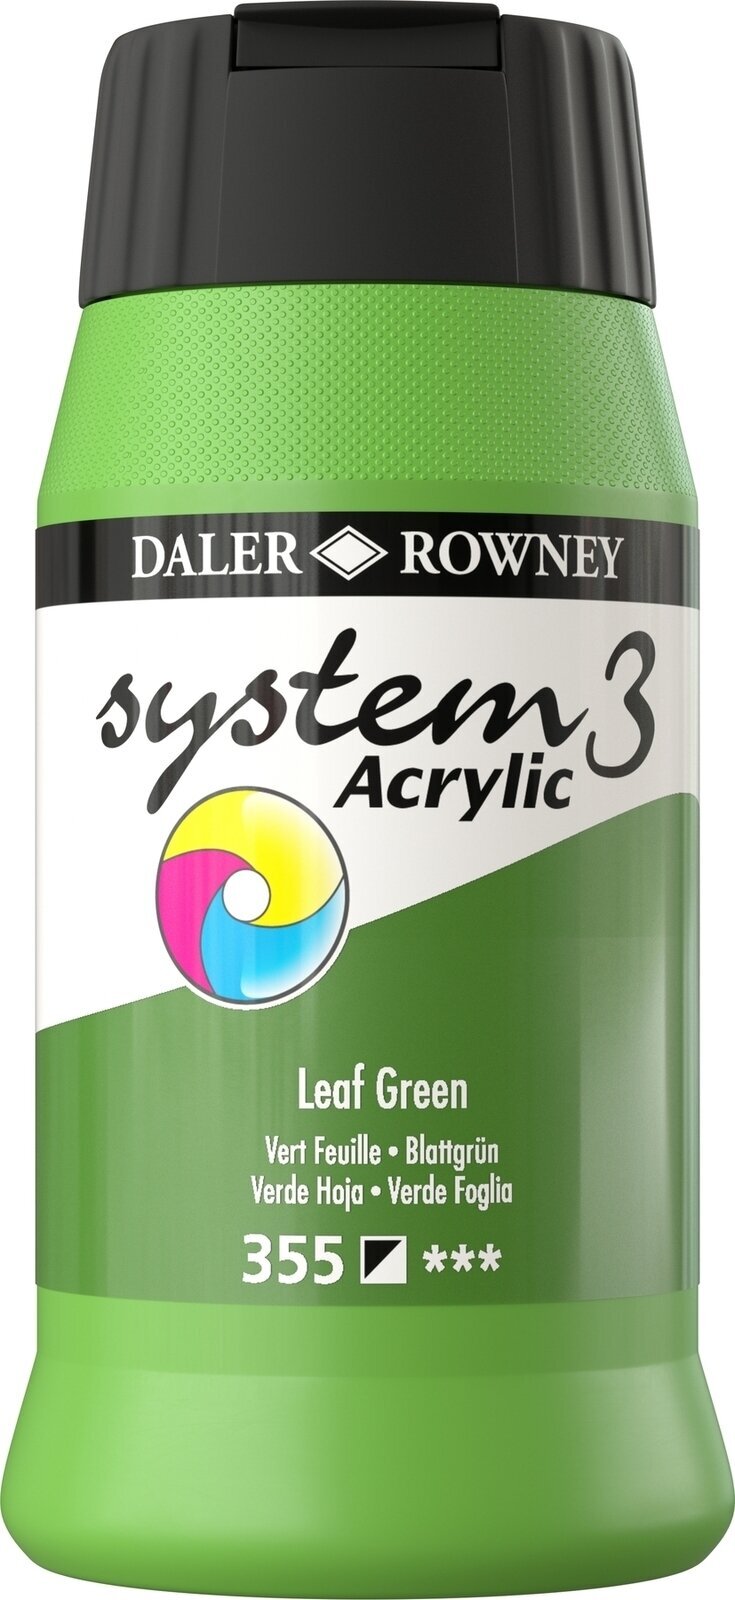 Akrylmaling Daler Rowney System3 Akrylmaling Leaf Green 500 ml 1 stk.